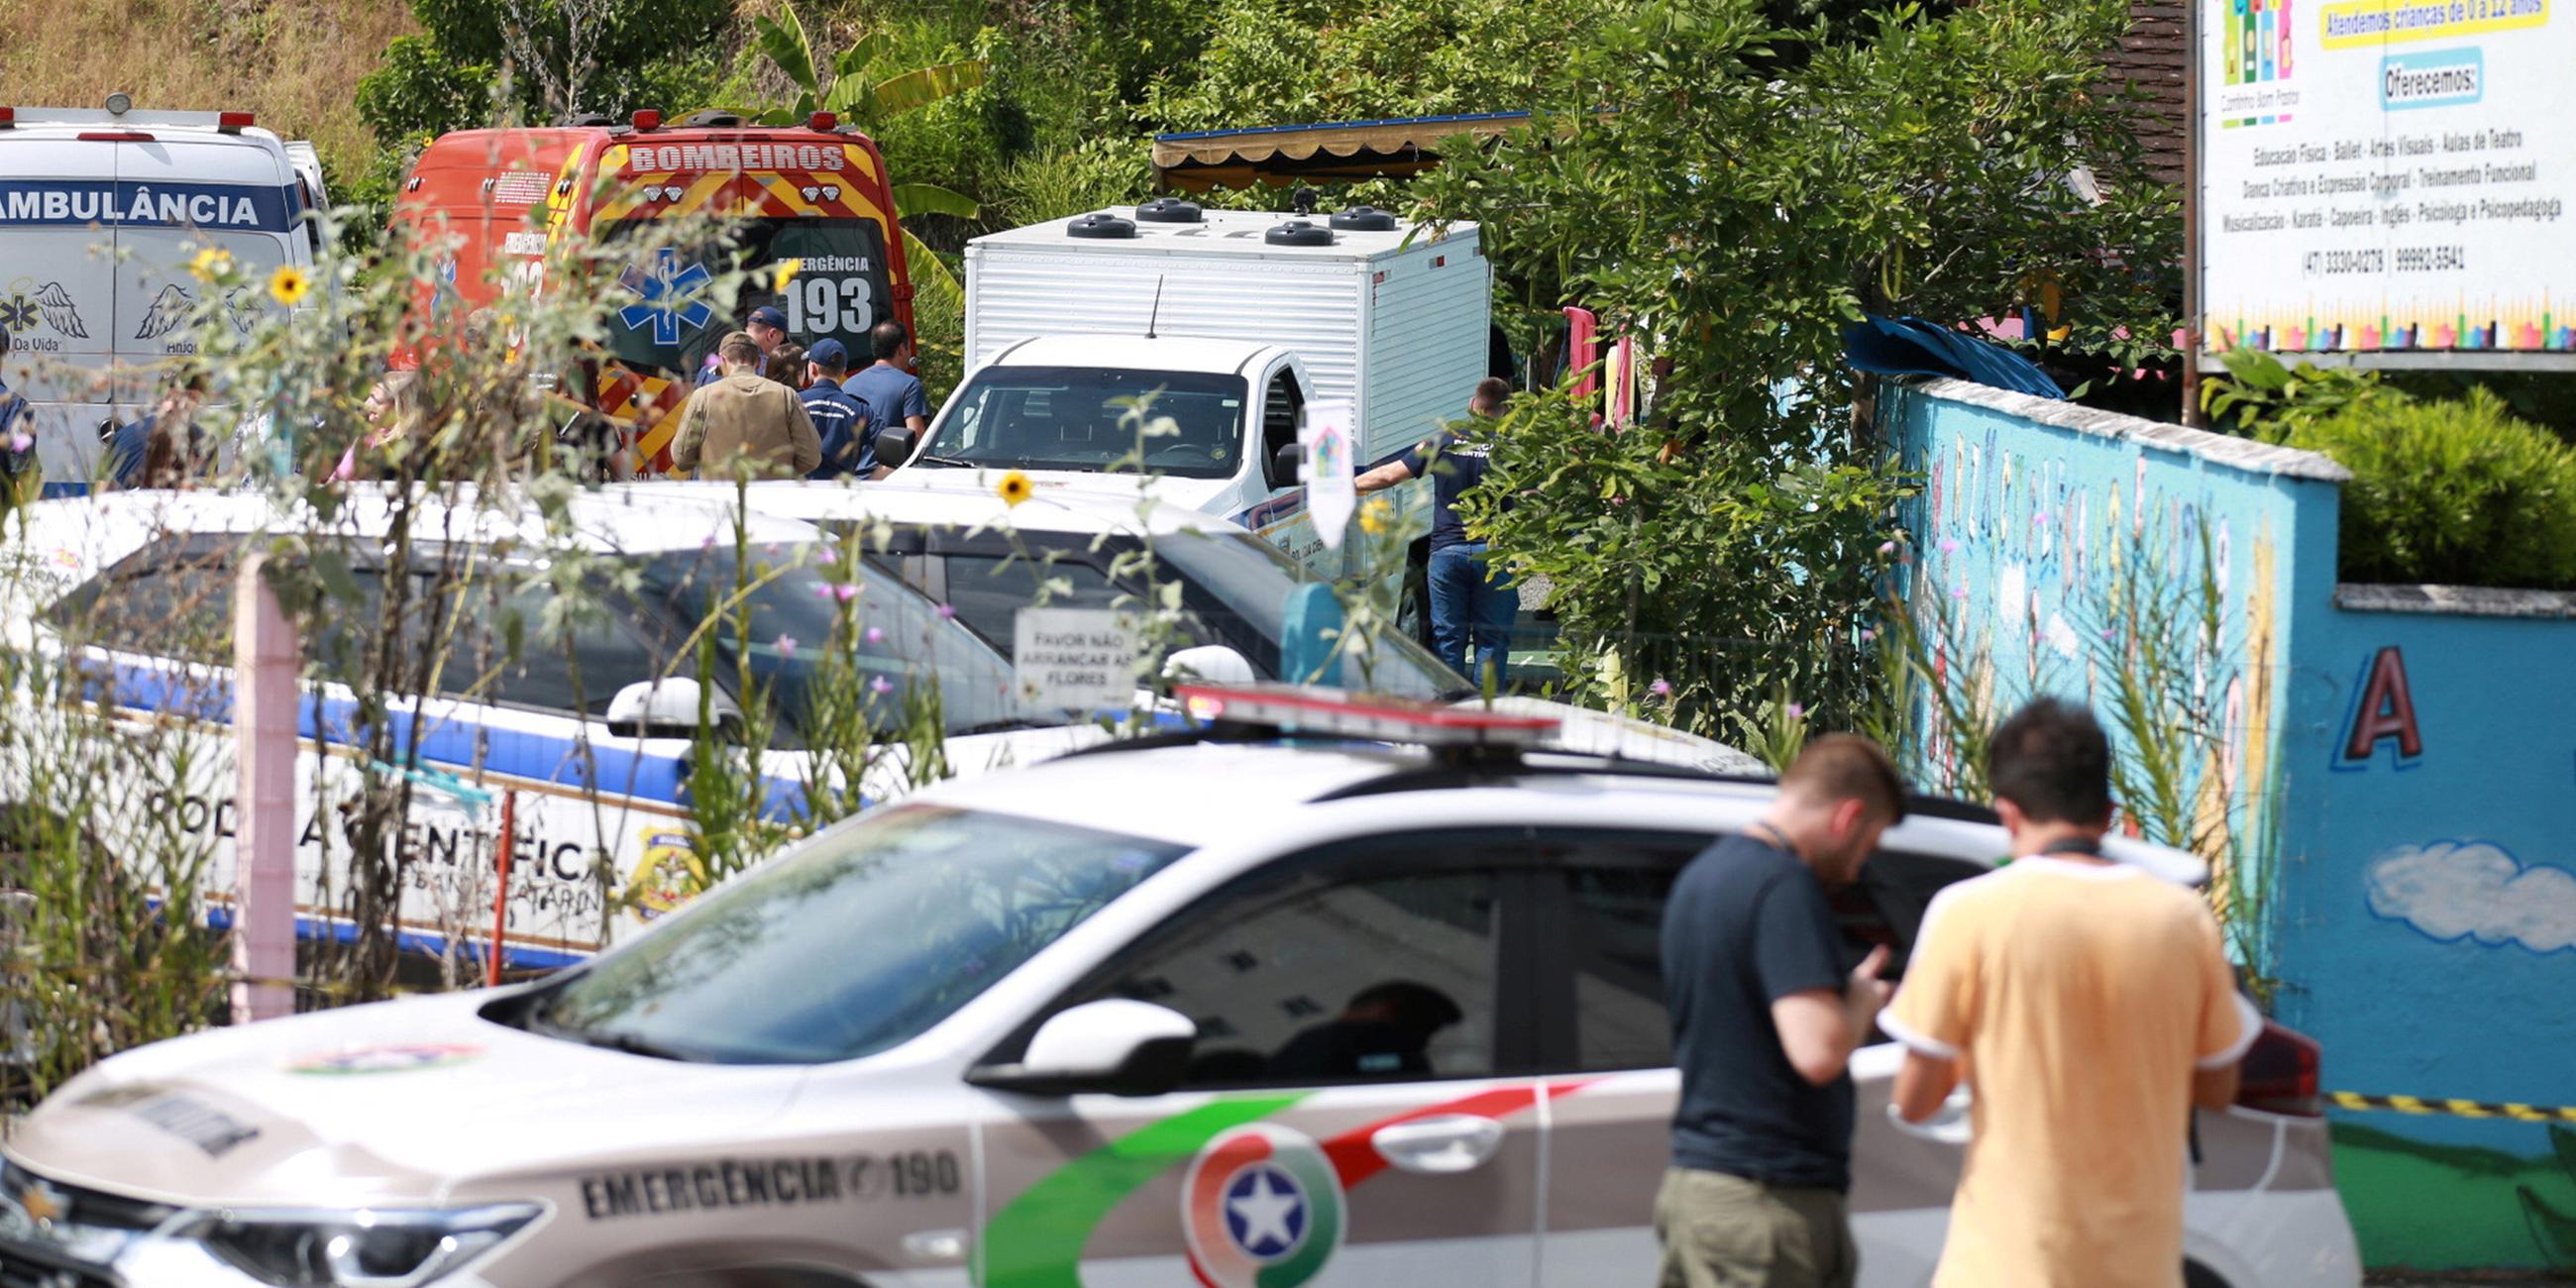 Rettungskräfte nach dem Angriff in der südbrasilianischen Stadt Blumenau